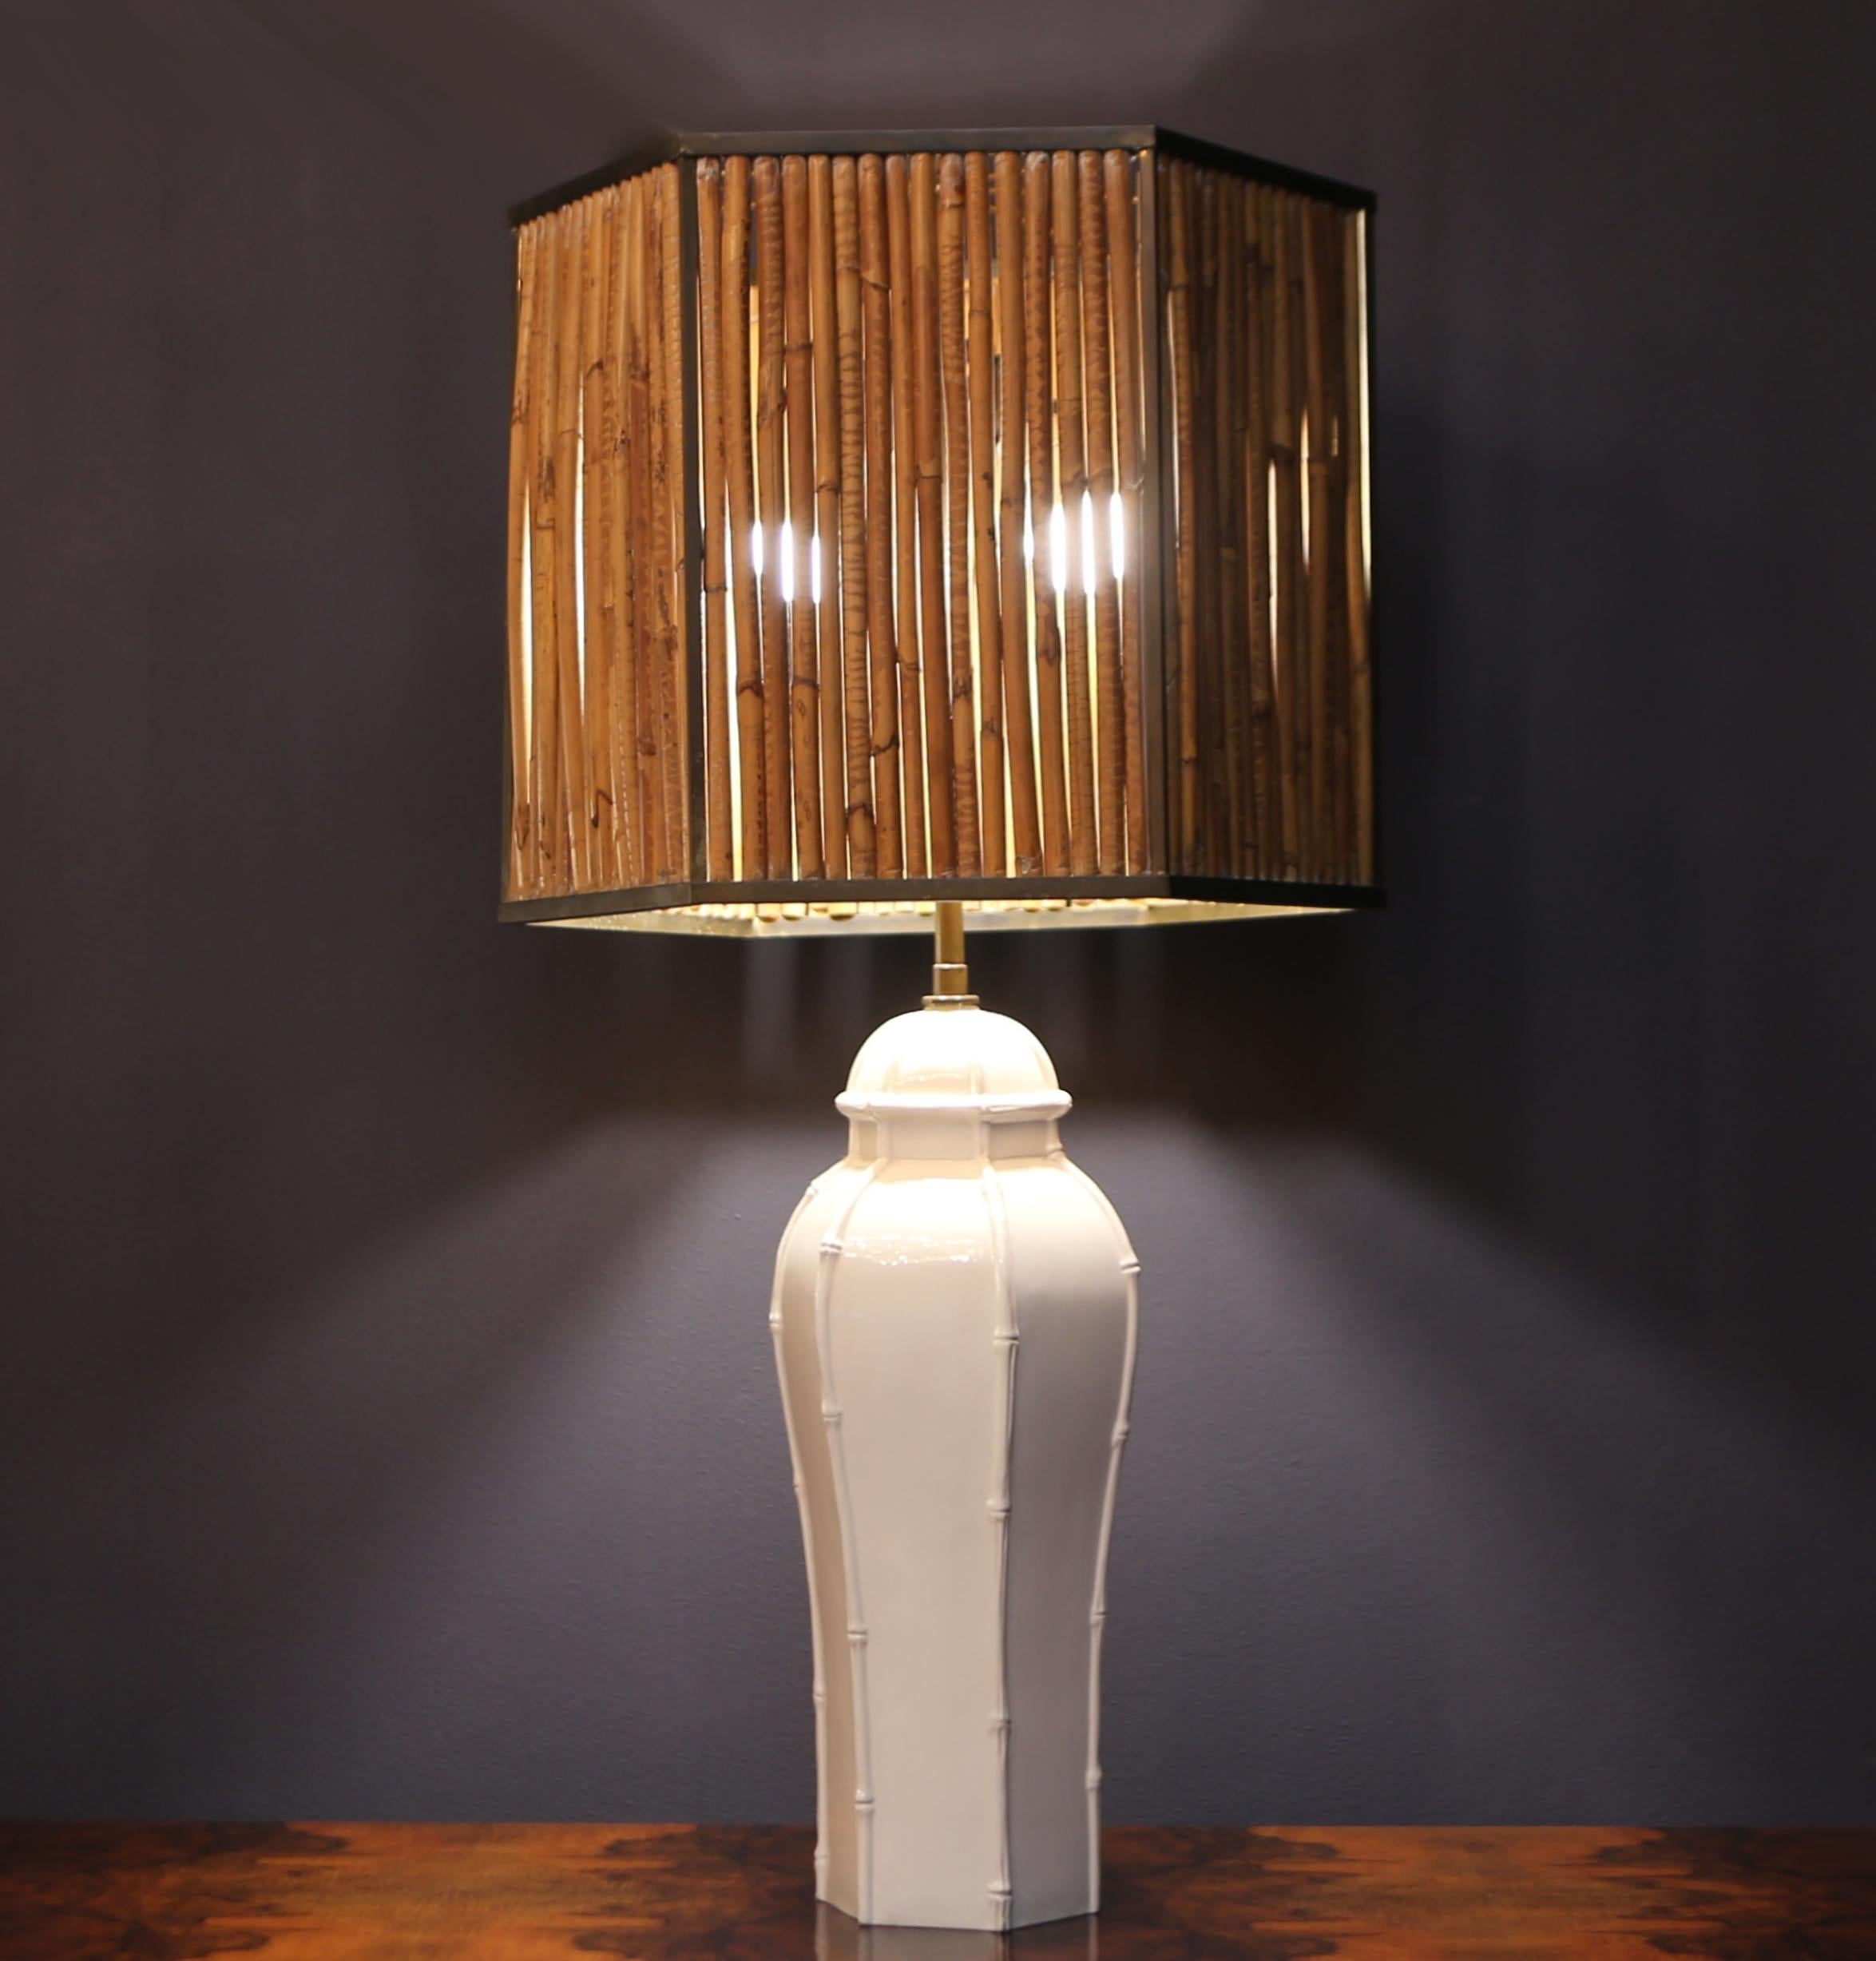 Seltene große Tischlampe aus Keramik  Bambus und Messing, Italien, 1970er Jahre.
Diese Lampe ist ein Beispiel für italienisches Design, ideal für moderne Räume.
der fuß dieser lampe ist aus keramik mit einer anspielung auf bambus. der lampenschirm